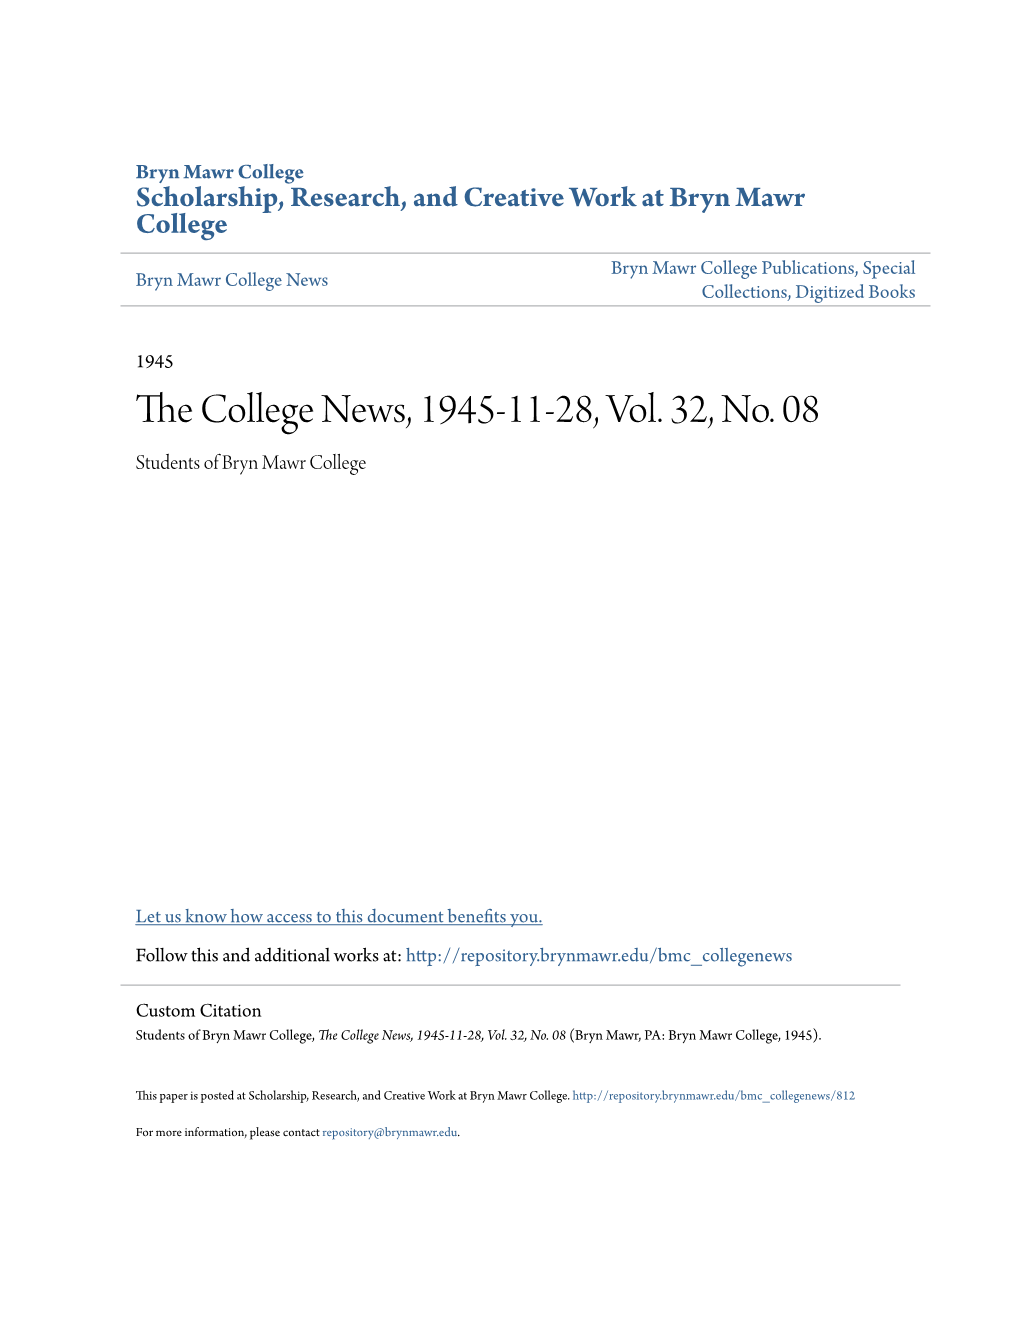 The College News, 1945-11-28, Vol. 32, No. 08 (Bryn Mawr, PA: Bryn Mawr College, 1945)